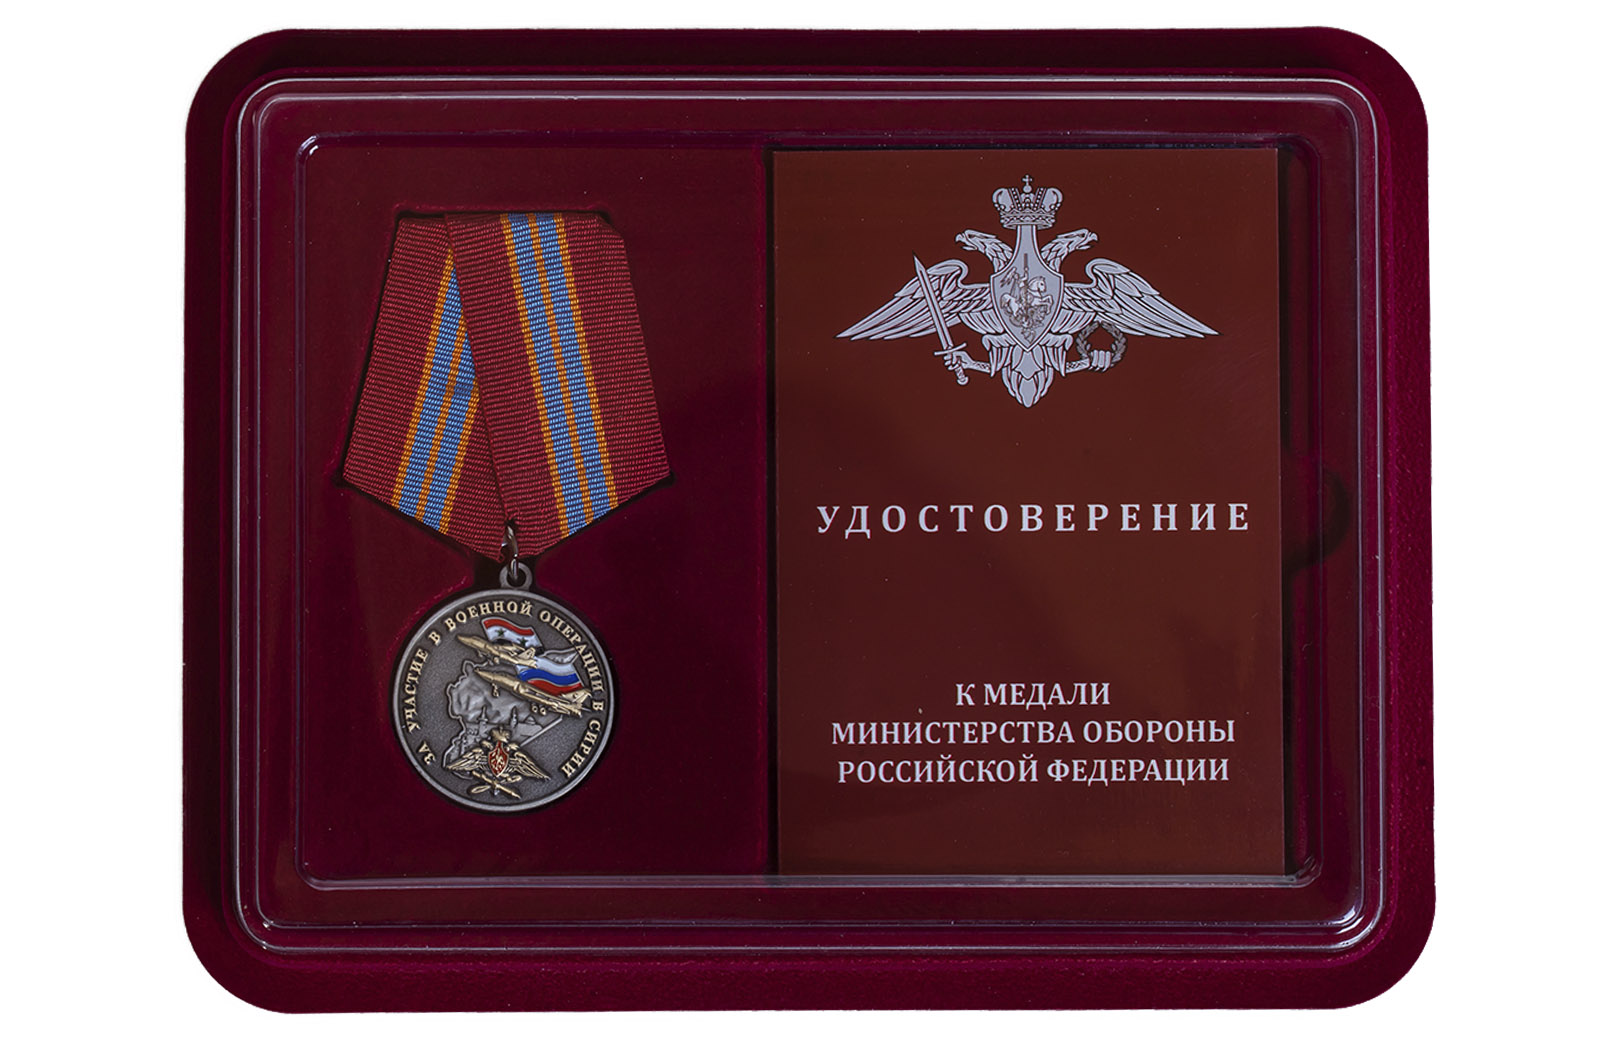 Купить памятную медаль За участие в военной операции в Сирии оптом или в розницу